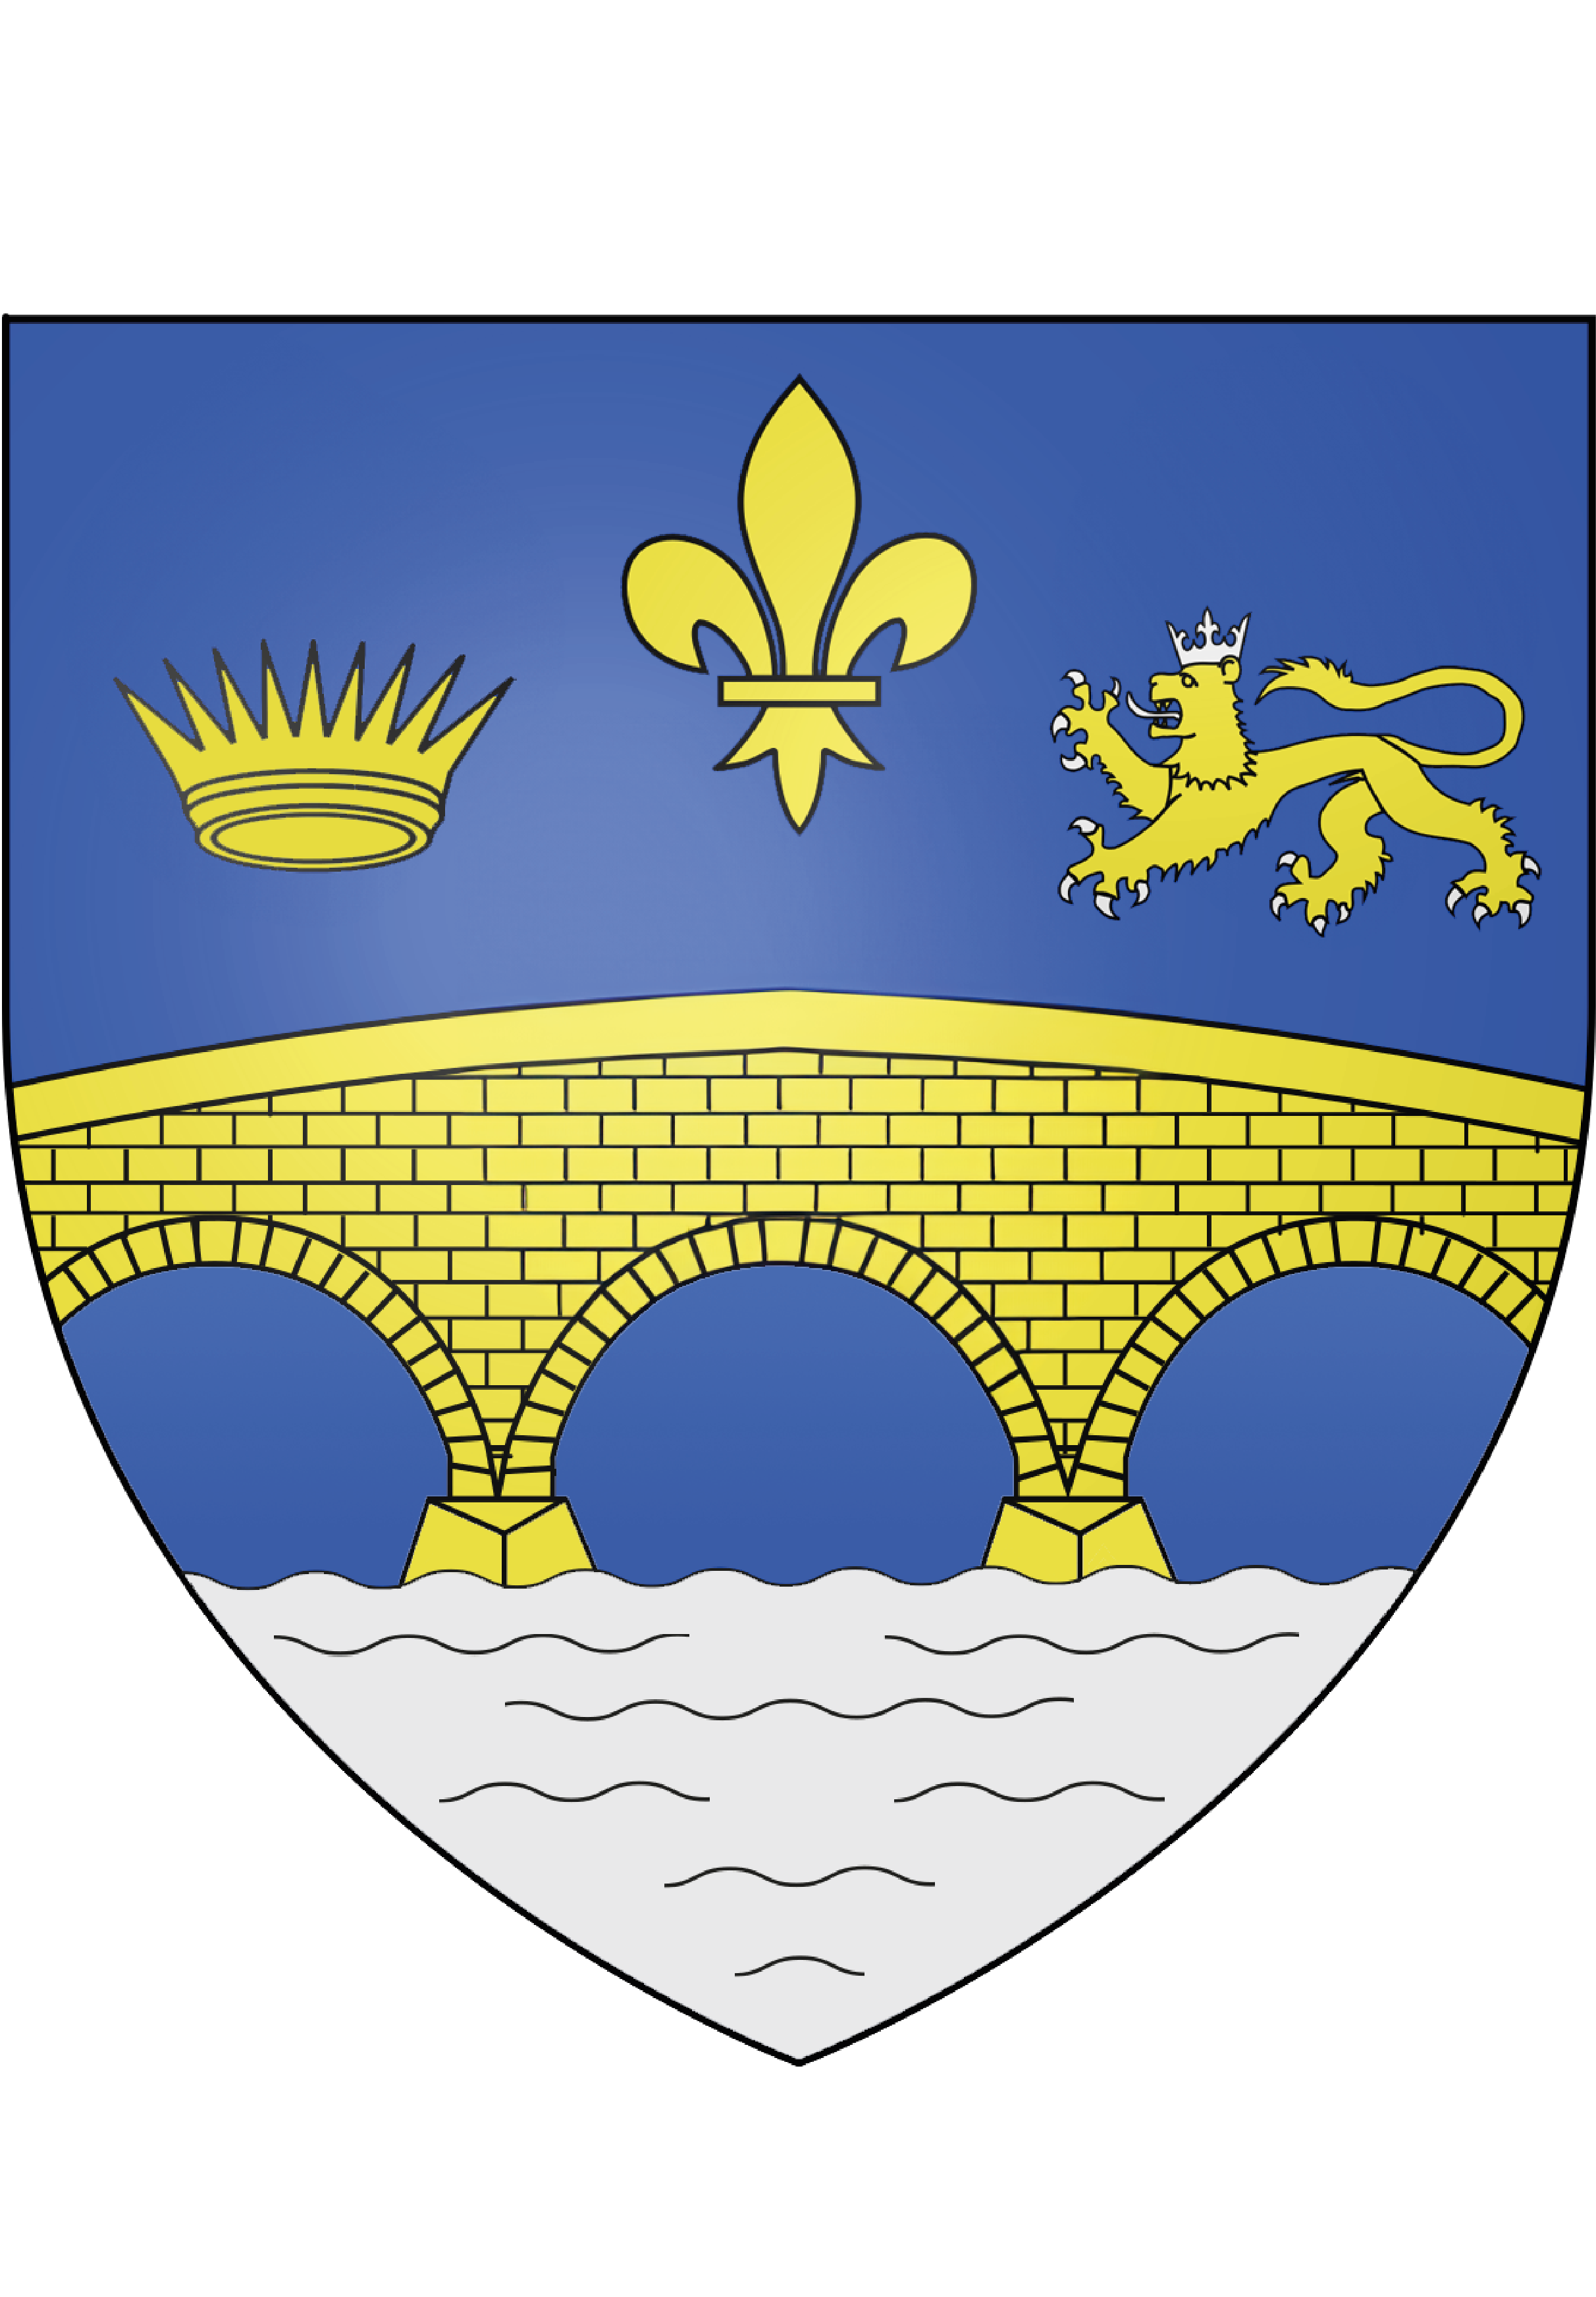 Société Historique de Noisy-le-grand, Gournay-sur-Marne, Champs-sur-Marne